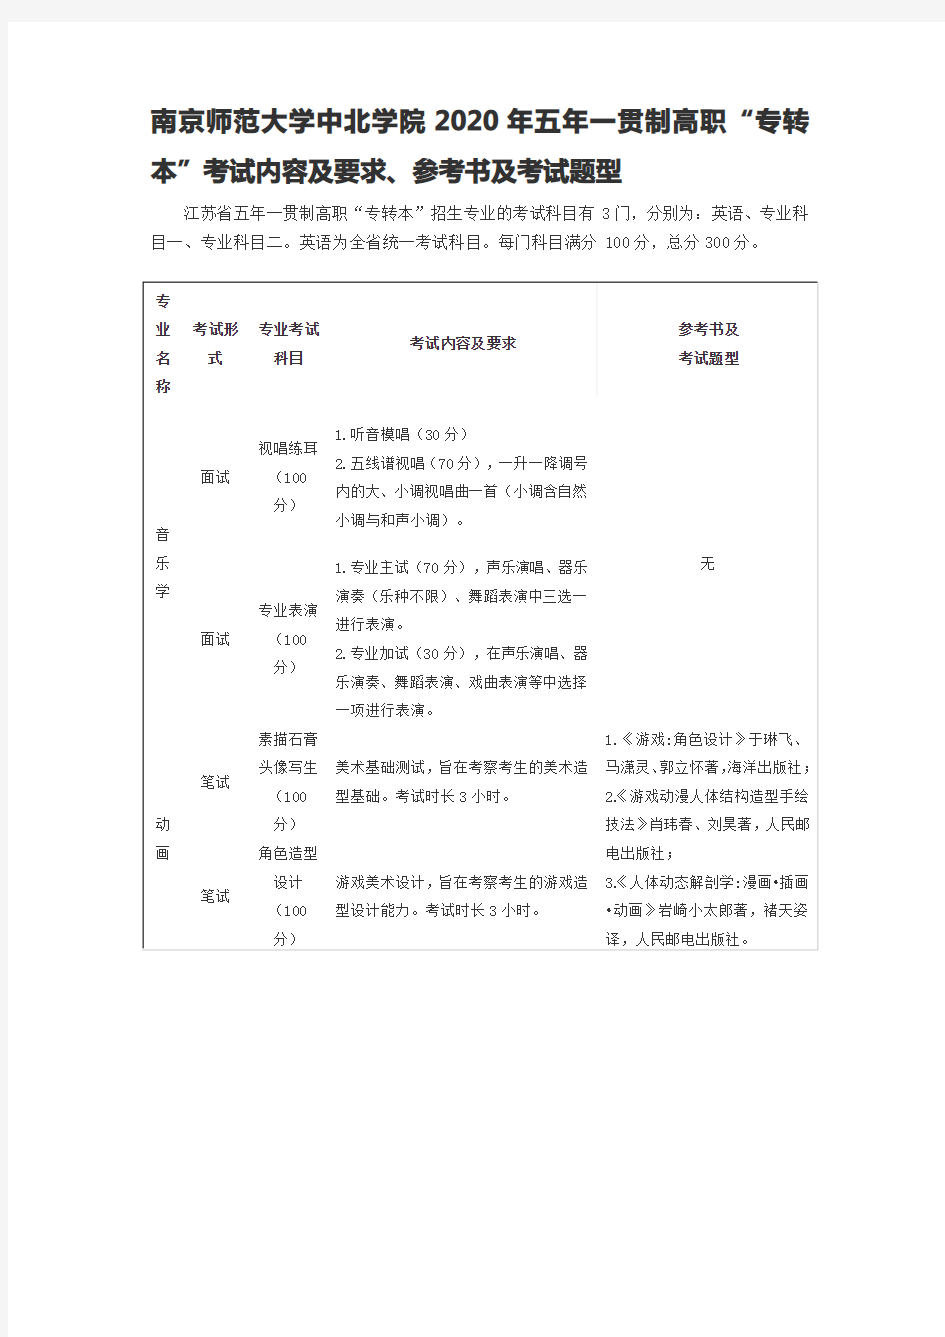 南京师范大学中北学院2020年五年一贯制高职“专转本”考试内容及要求、参考书及考试题型